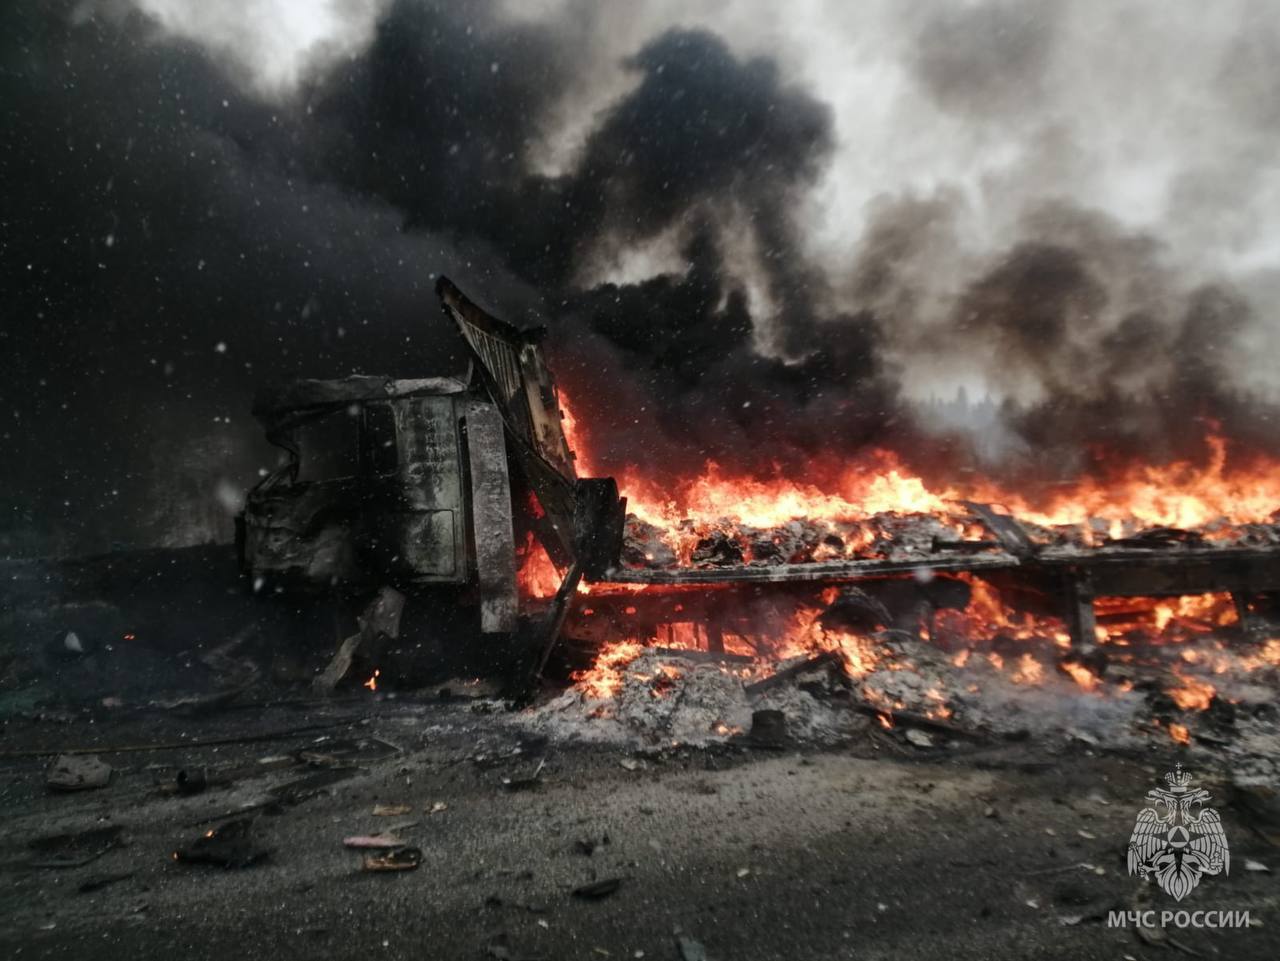 МЧС опубликовало кадры с грузовиками, сгоревшими на трассе в Кузбассе